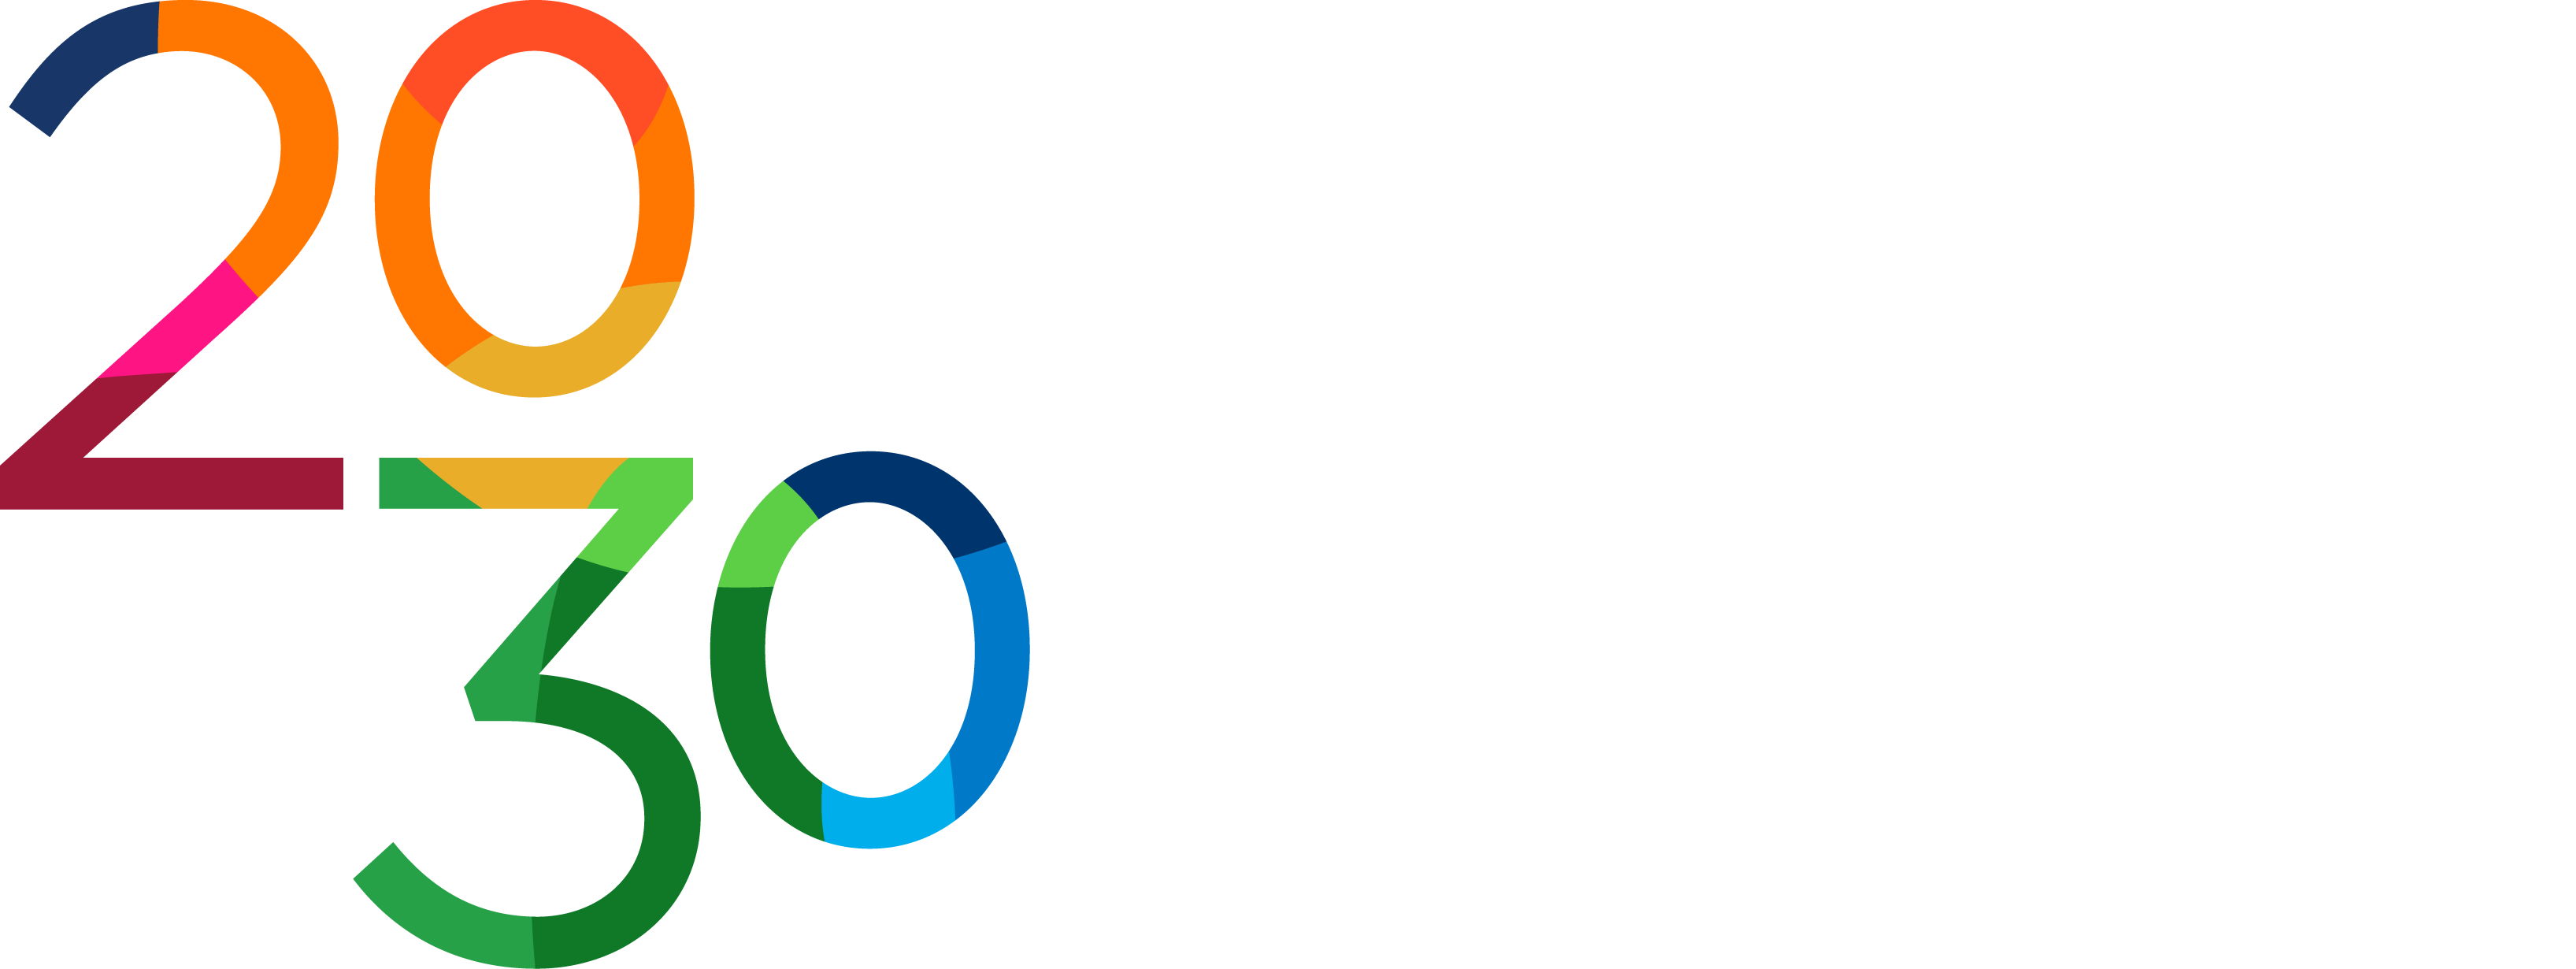 Molymet 2030 - Agenda de Sustentabilidad